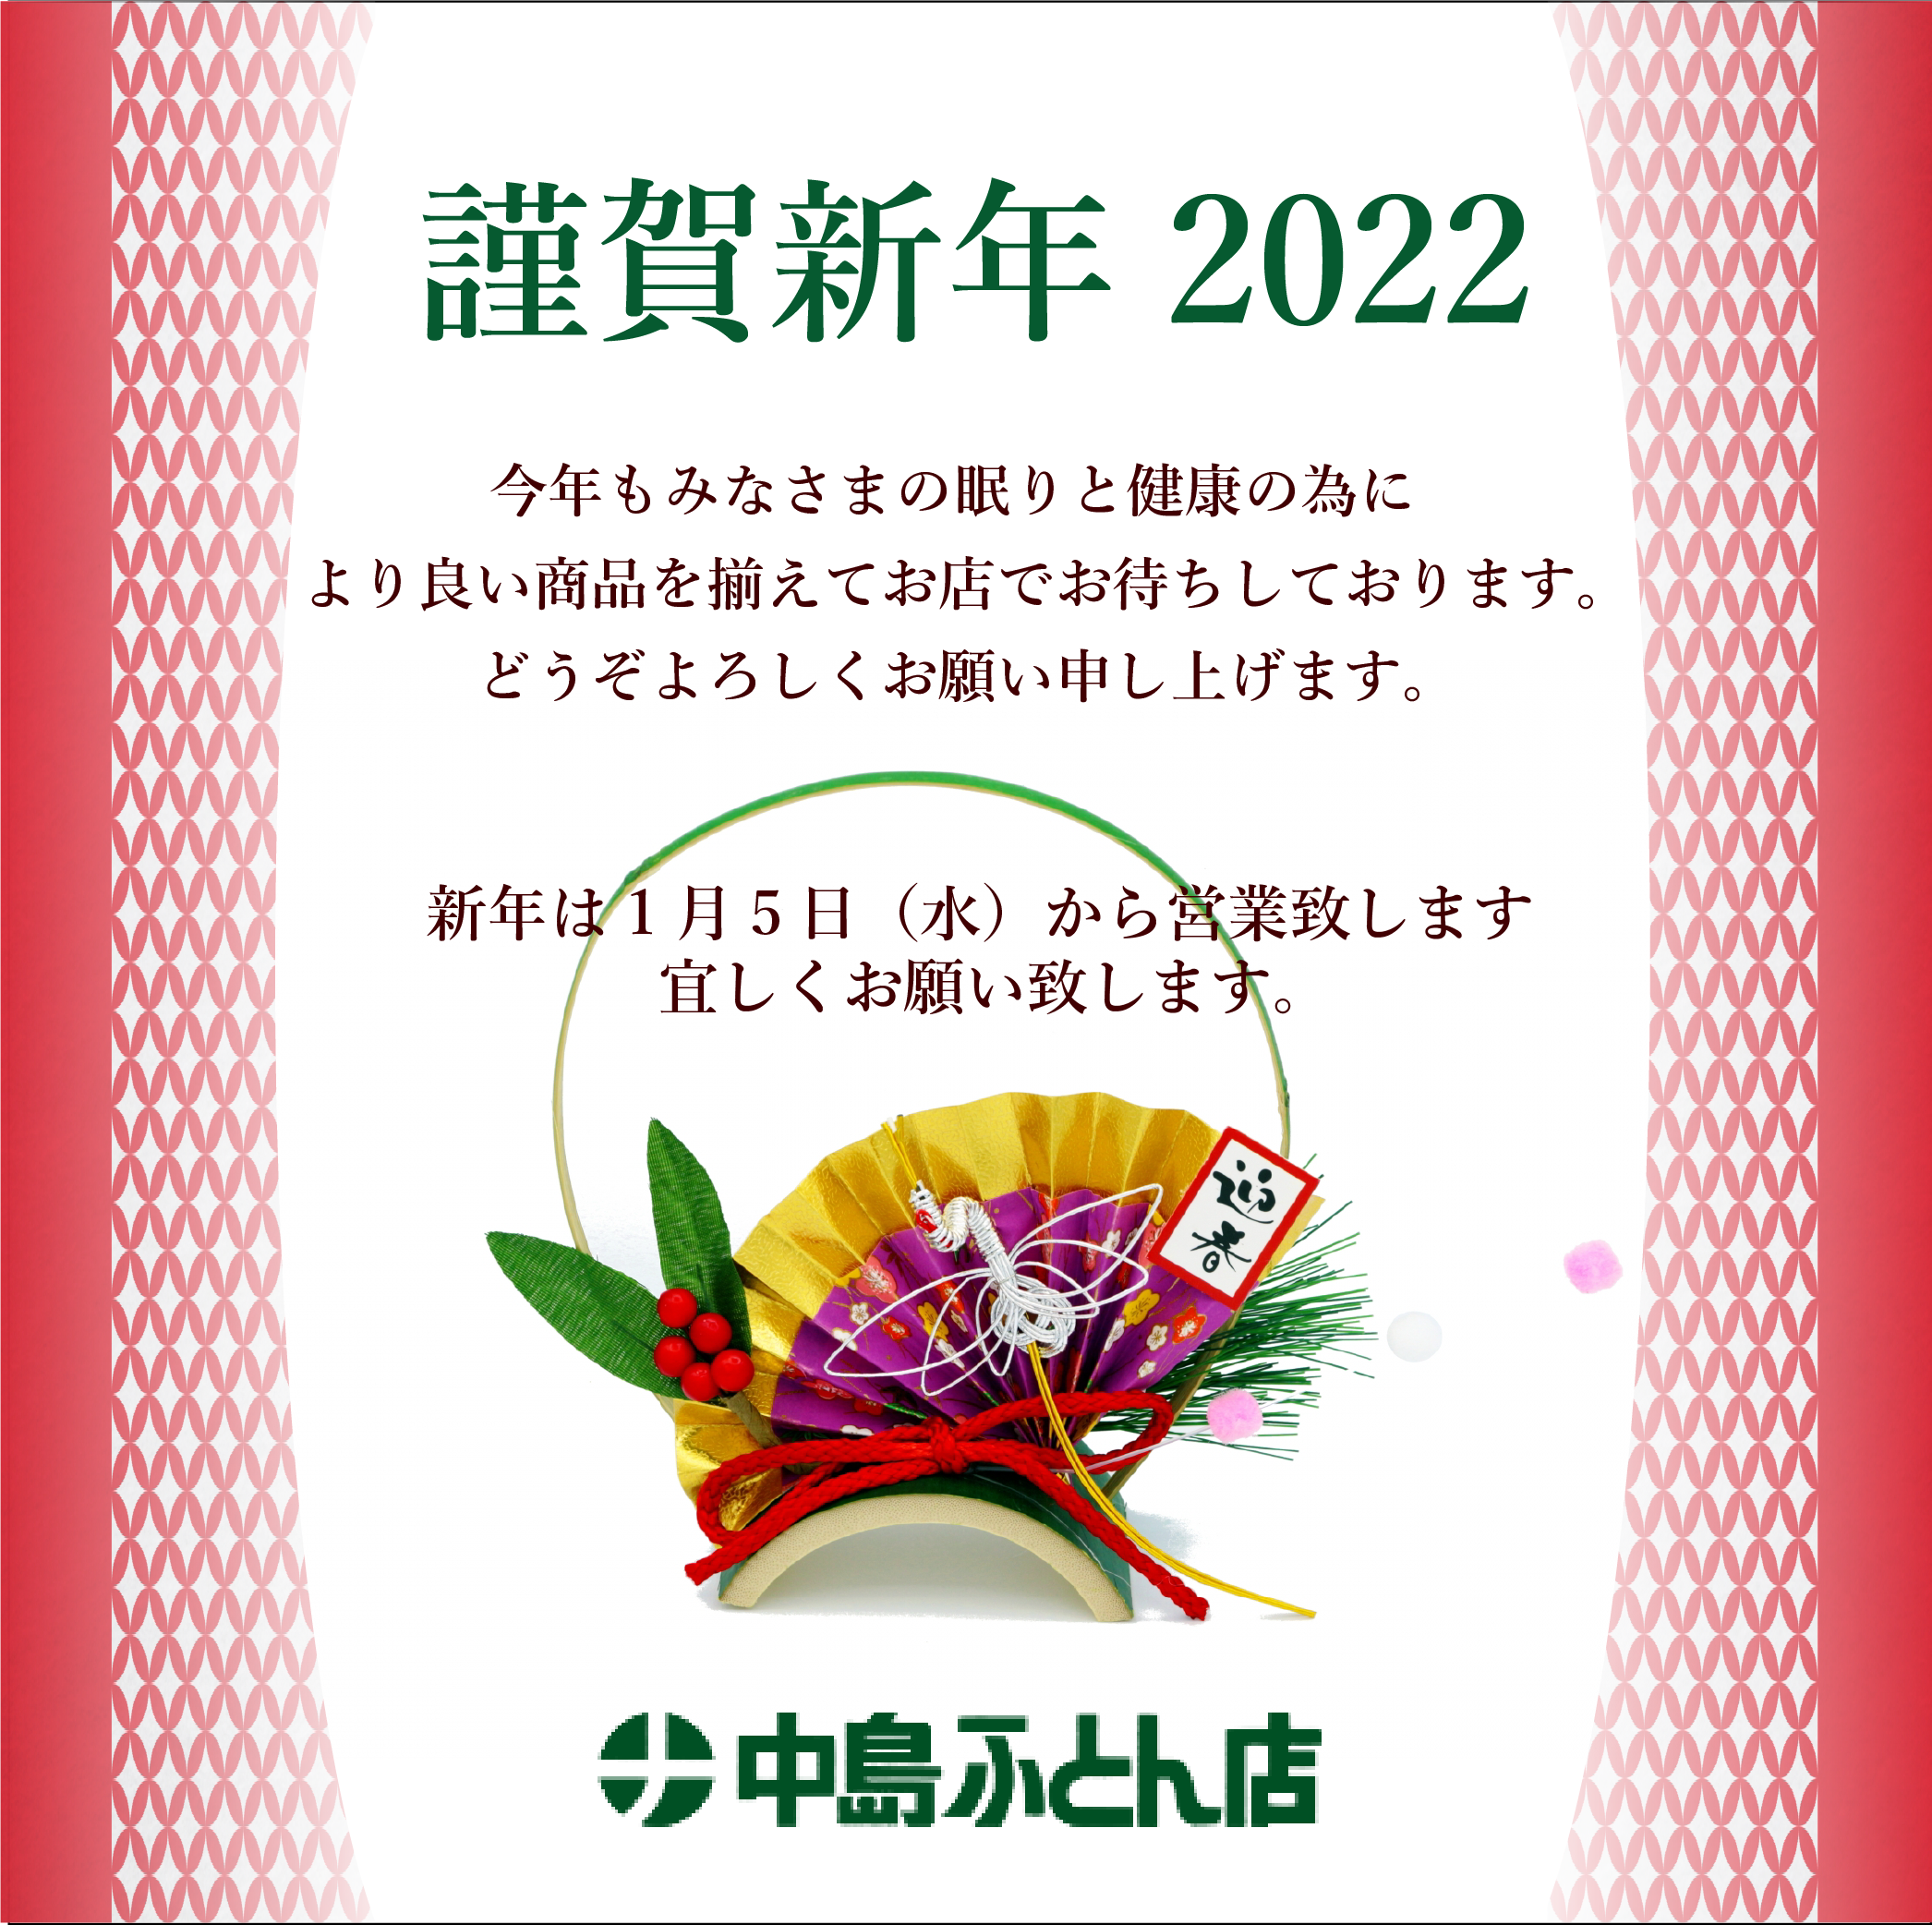 中島ふとん店 | nakashimafutonten.com | 2022年、年始のご挨拶